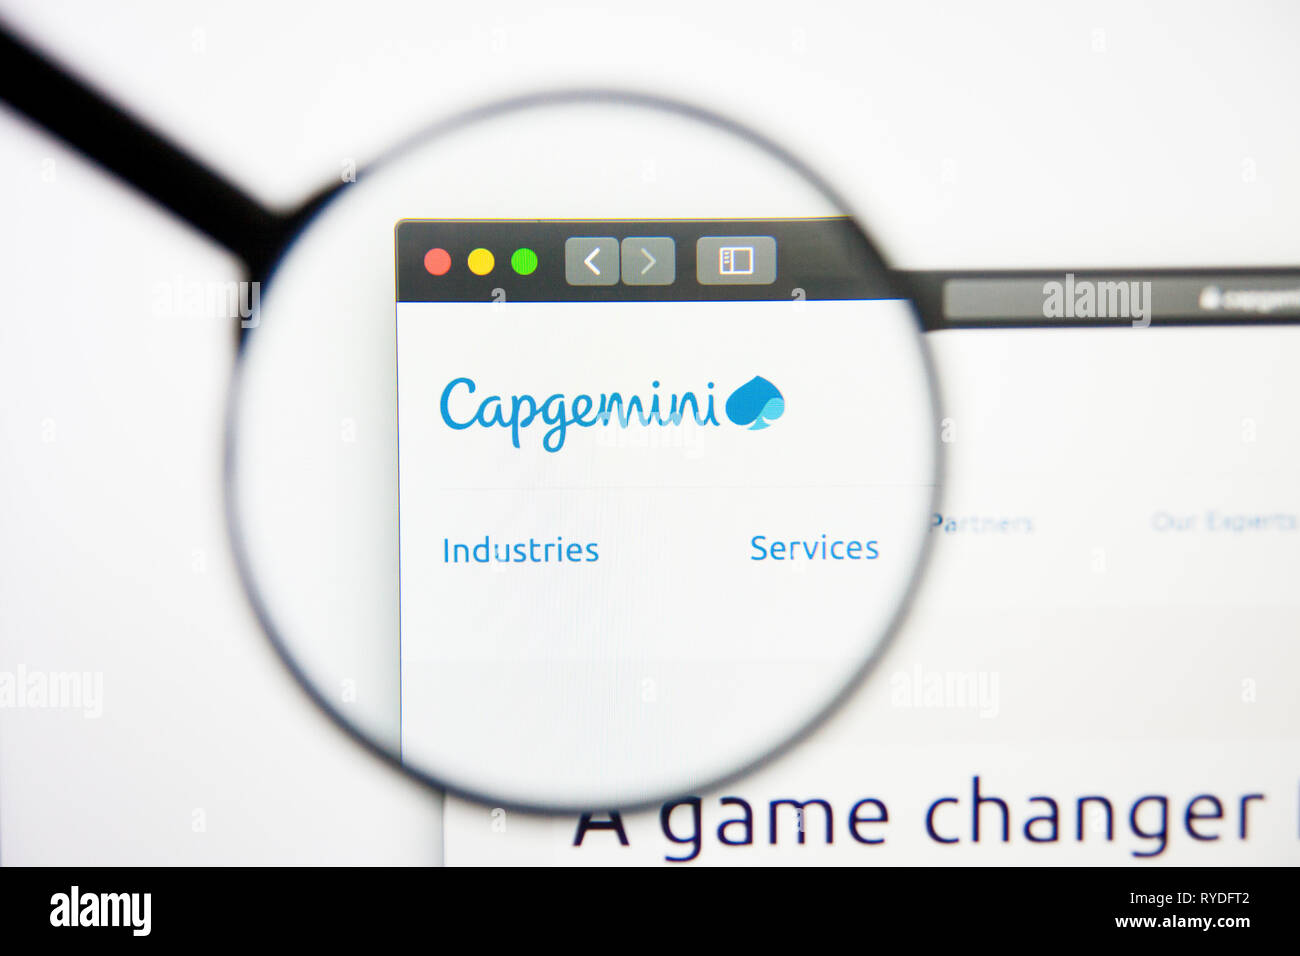 Los Angeles, Californie, USA - 5 mars 2019 : Capgemini d'accueil du site. Logo Capgemini visible sur l'écran d'affichage, de rédaction d'illustration Banque D'Images